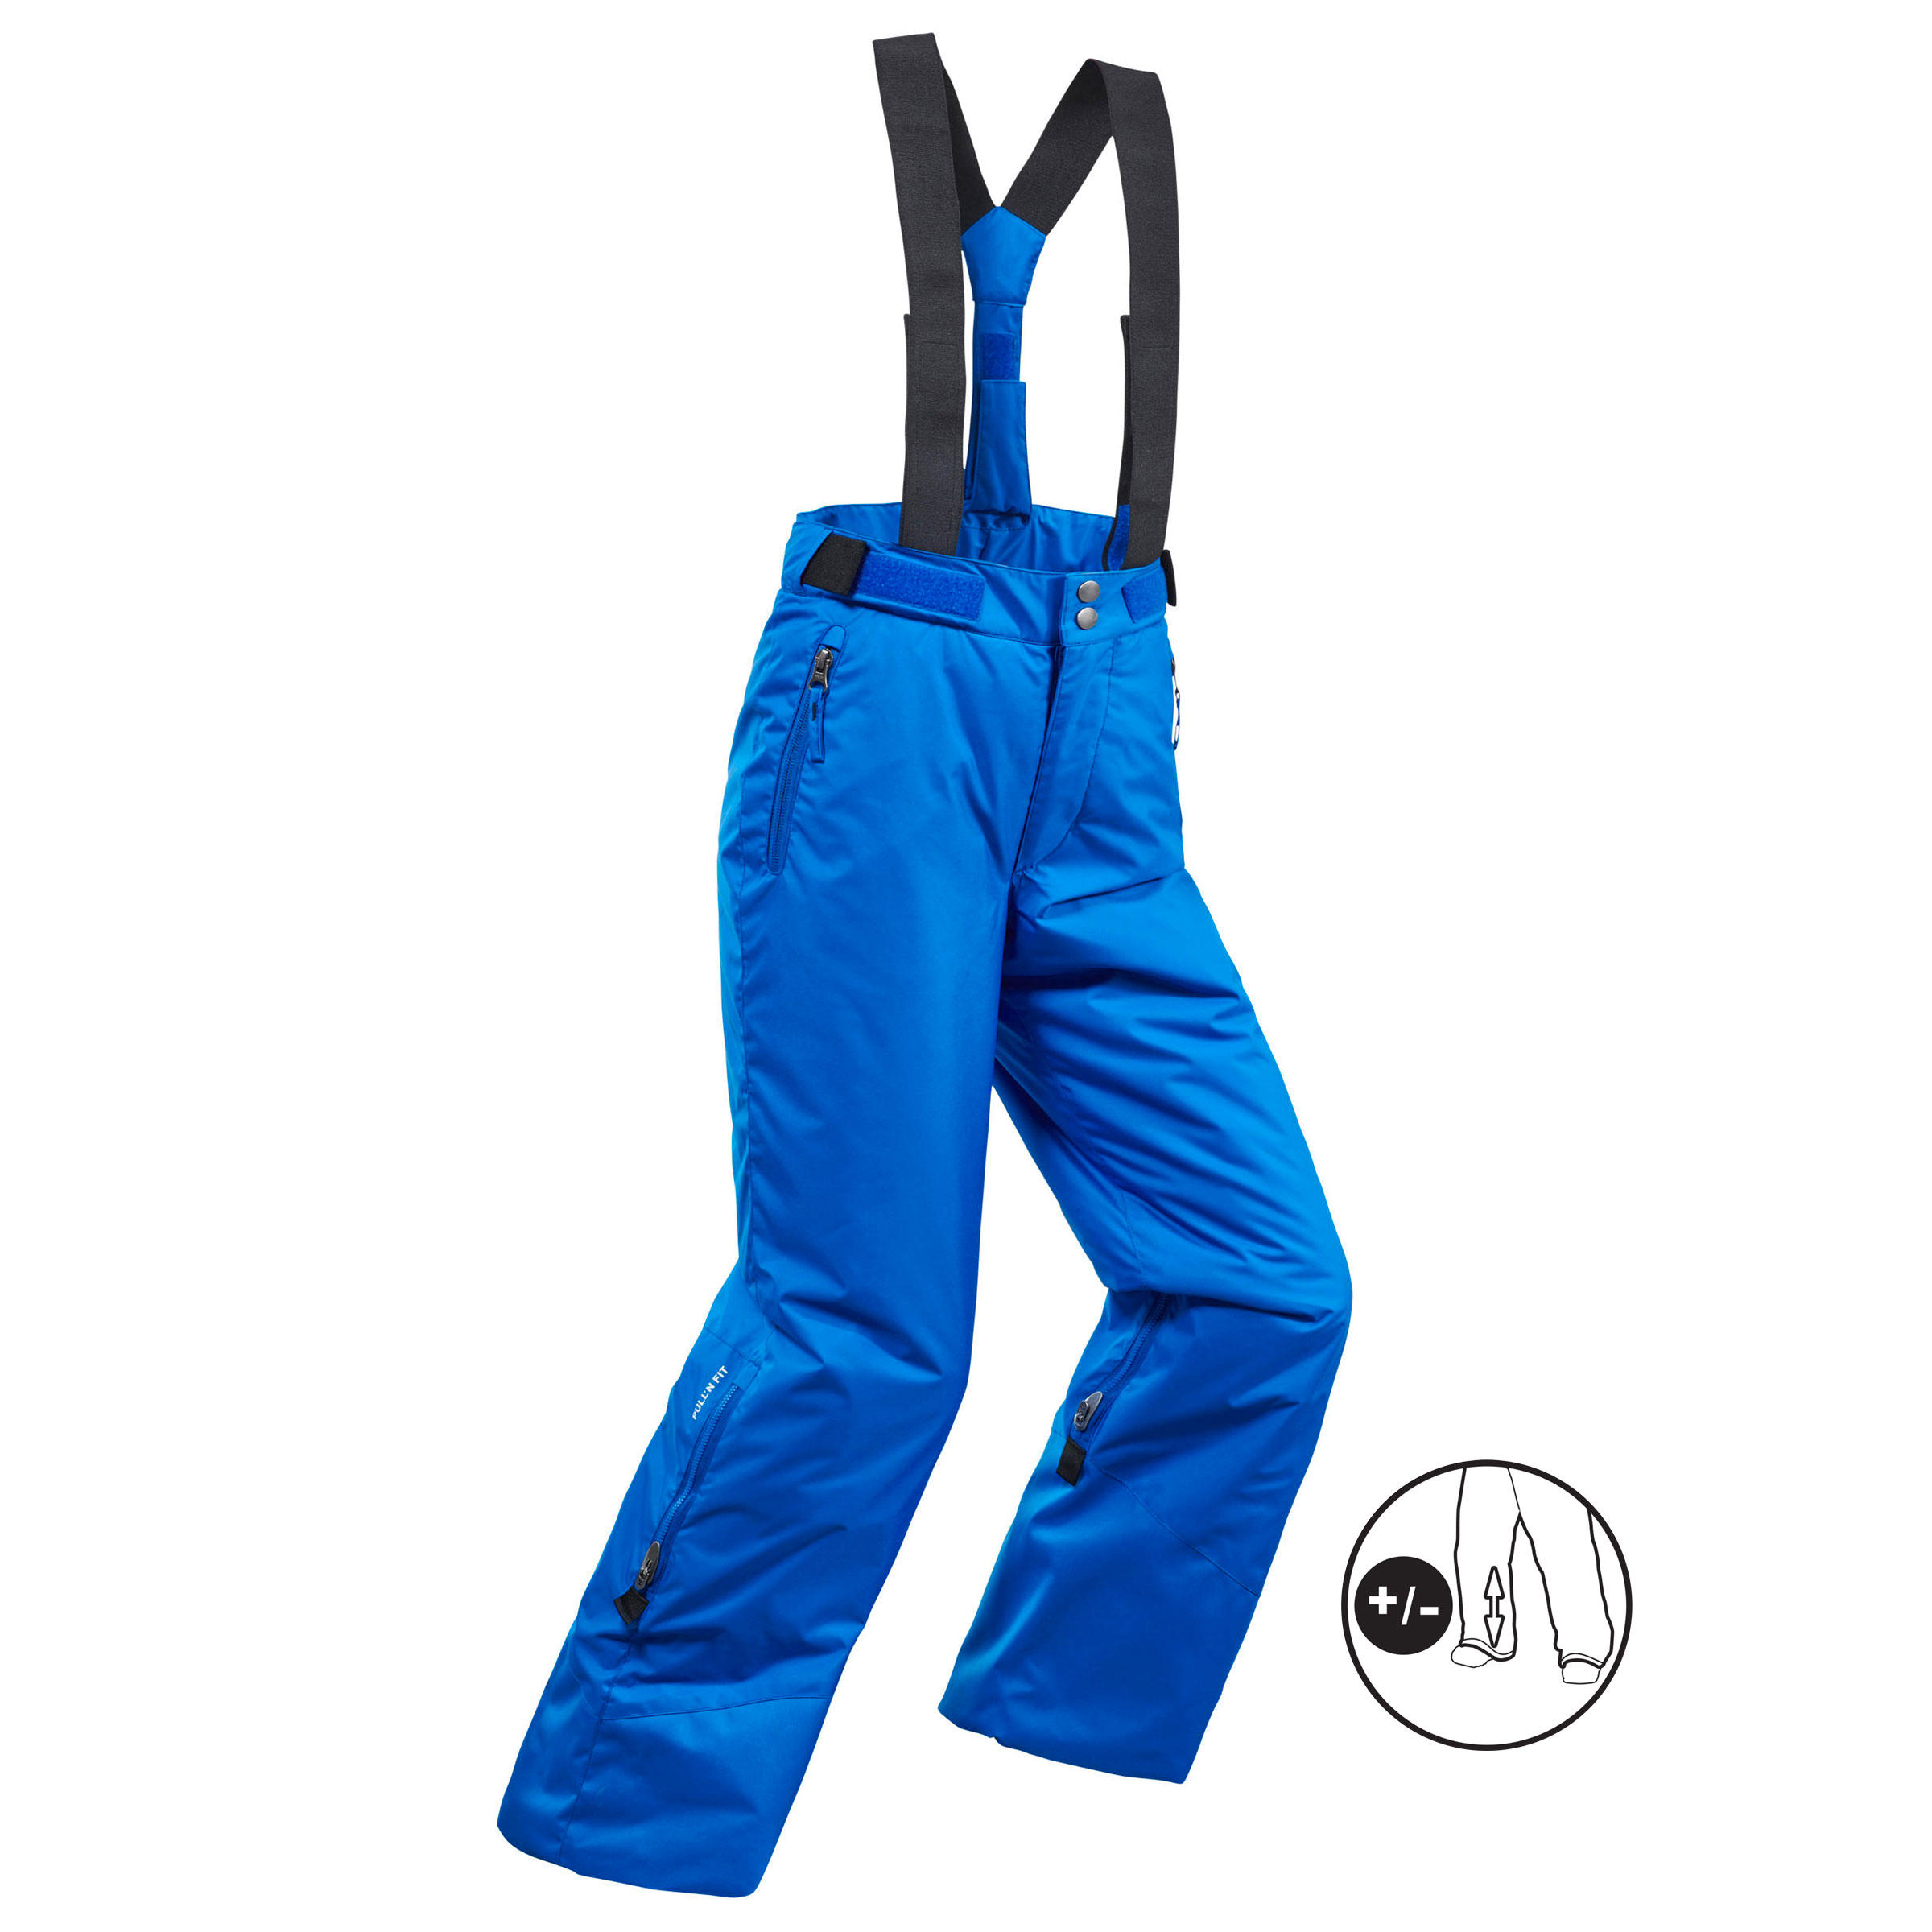 Pantalon călduros impermeabil schi PNF500 Albastru Băieți La Oferta Online decathlon imagine La Oferta Online